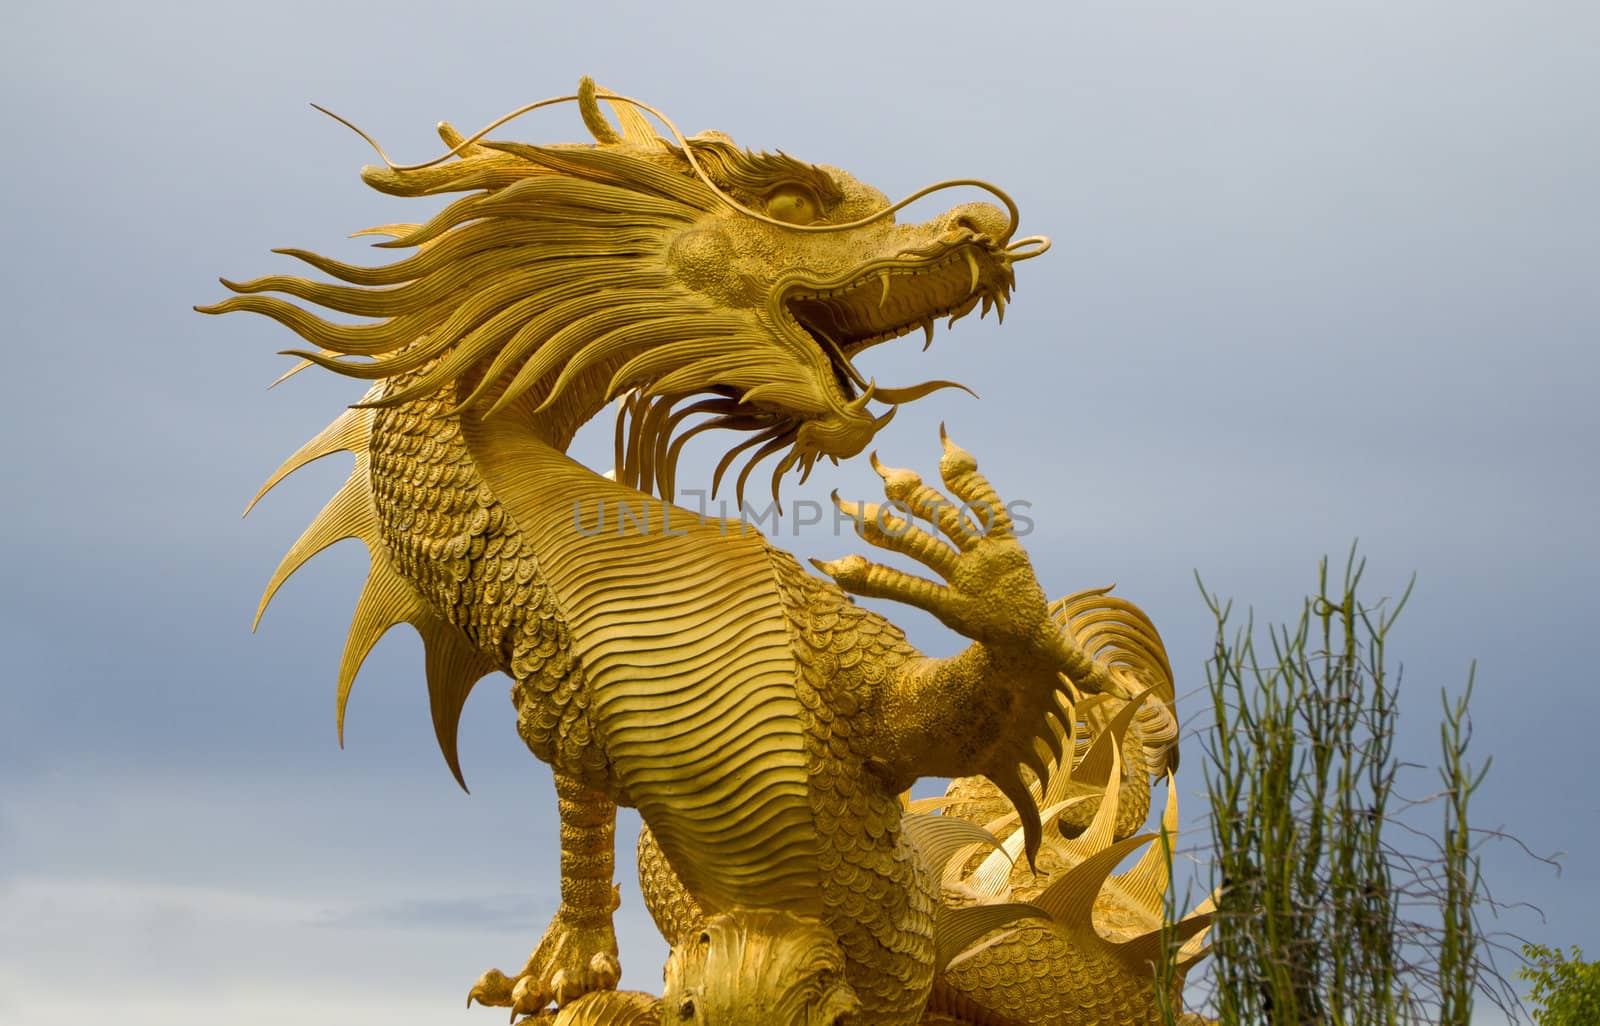 Golden dragon statue in pattaya,Thailand